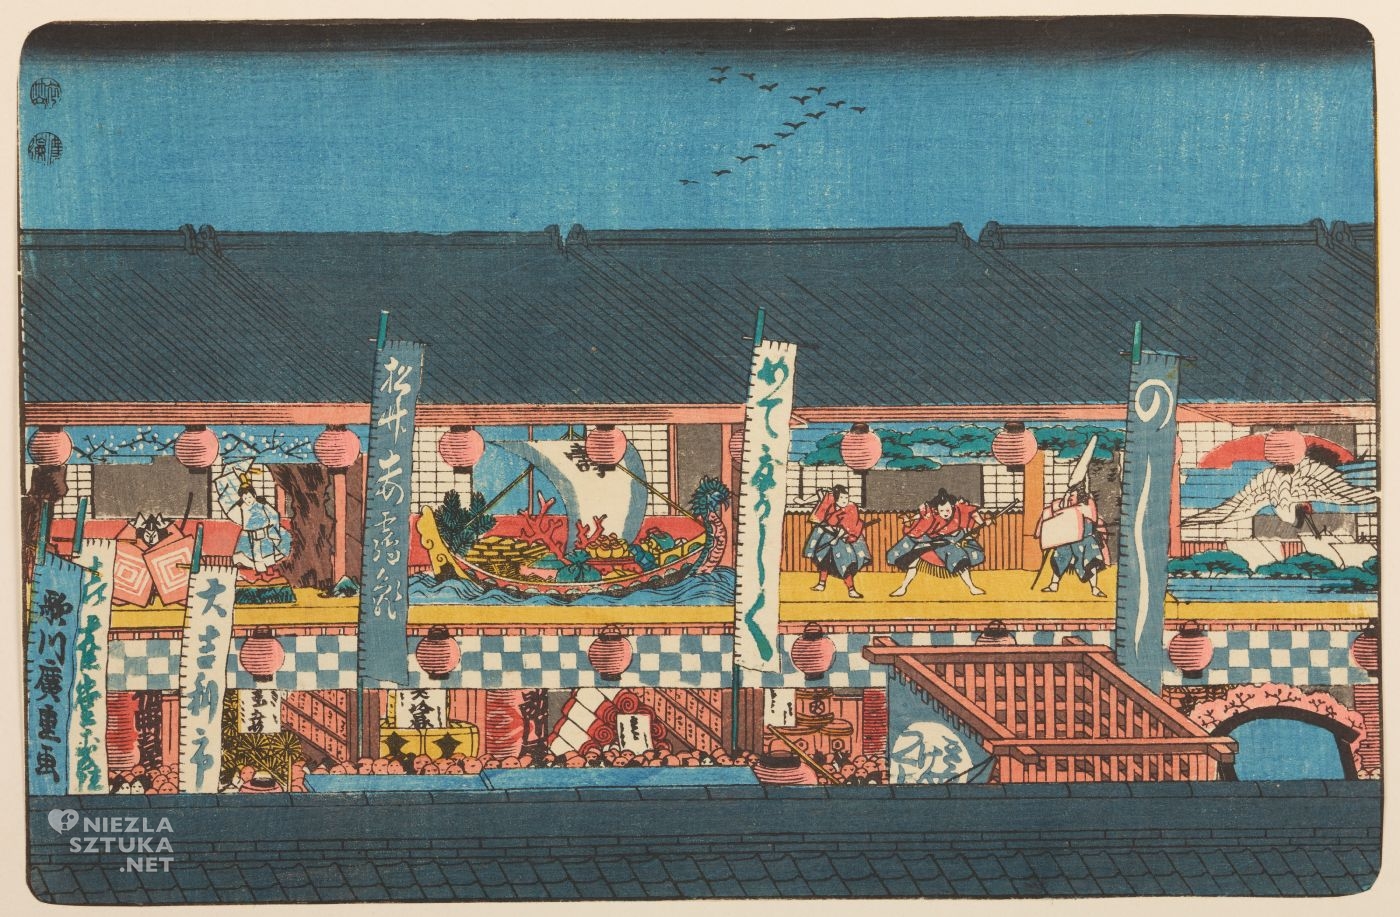 Utagawa Hiroshige, Wąska uliczka w nocy, Edo, grafika artystyczna, drzeworyt, sztuka, sztuka japońska, ukiyo-e, drzeworyty japońskie, niezła sztuka